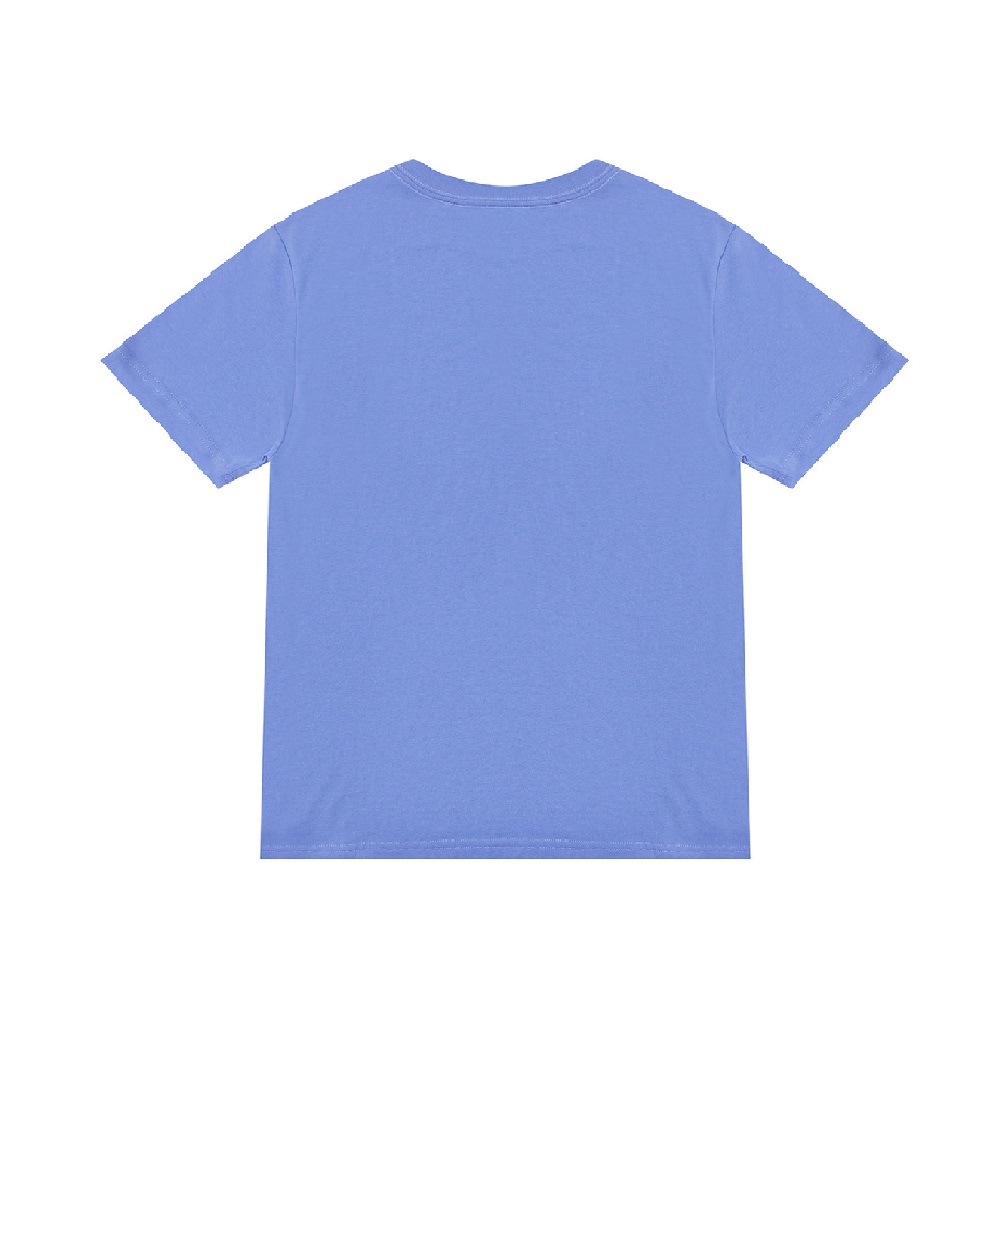 Детская футболка Polo Bear Polo Ralph Lauren Kids 320853828015, голубой цвет • Купить в интернет-магазине Kameron